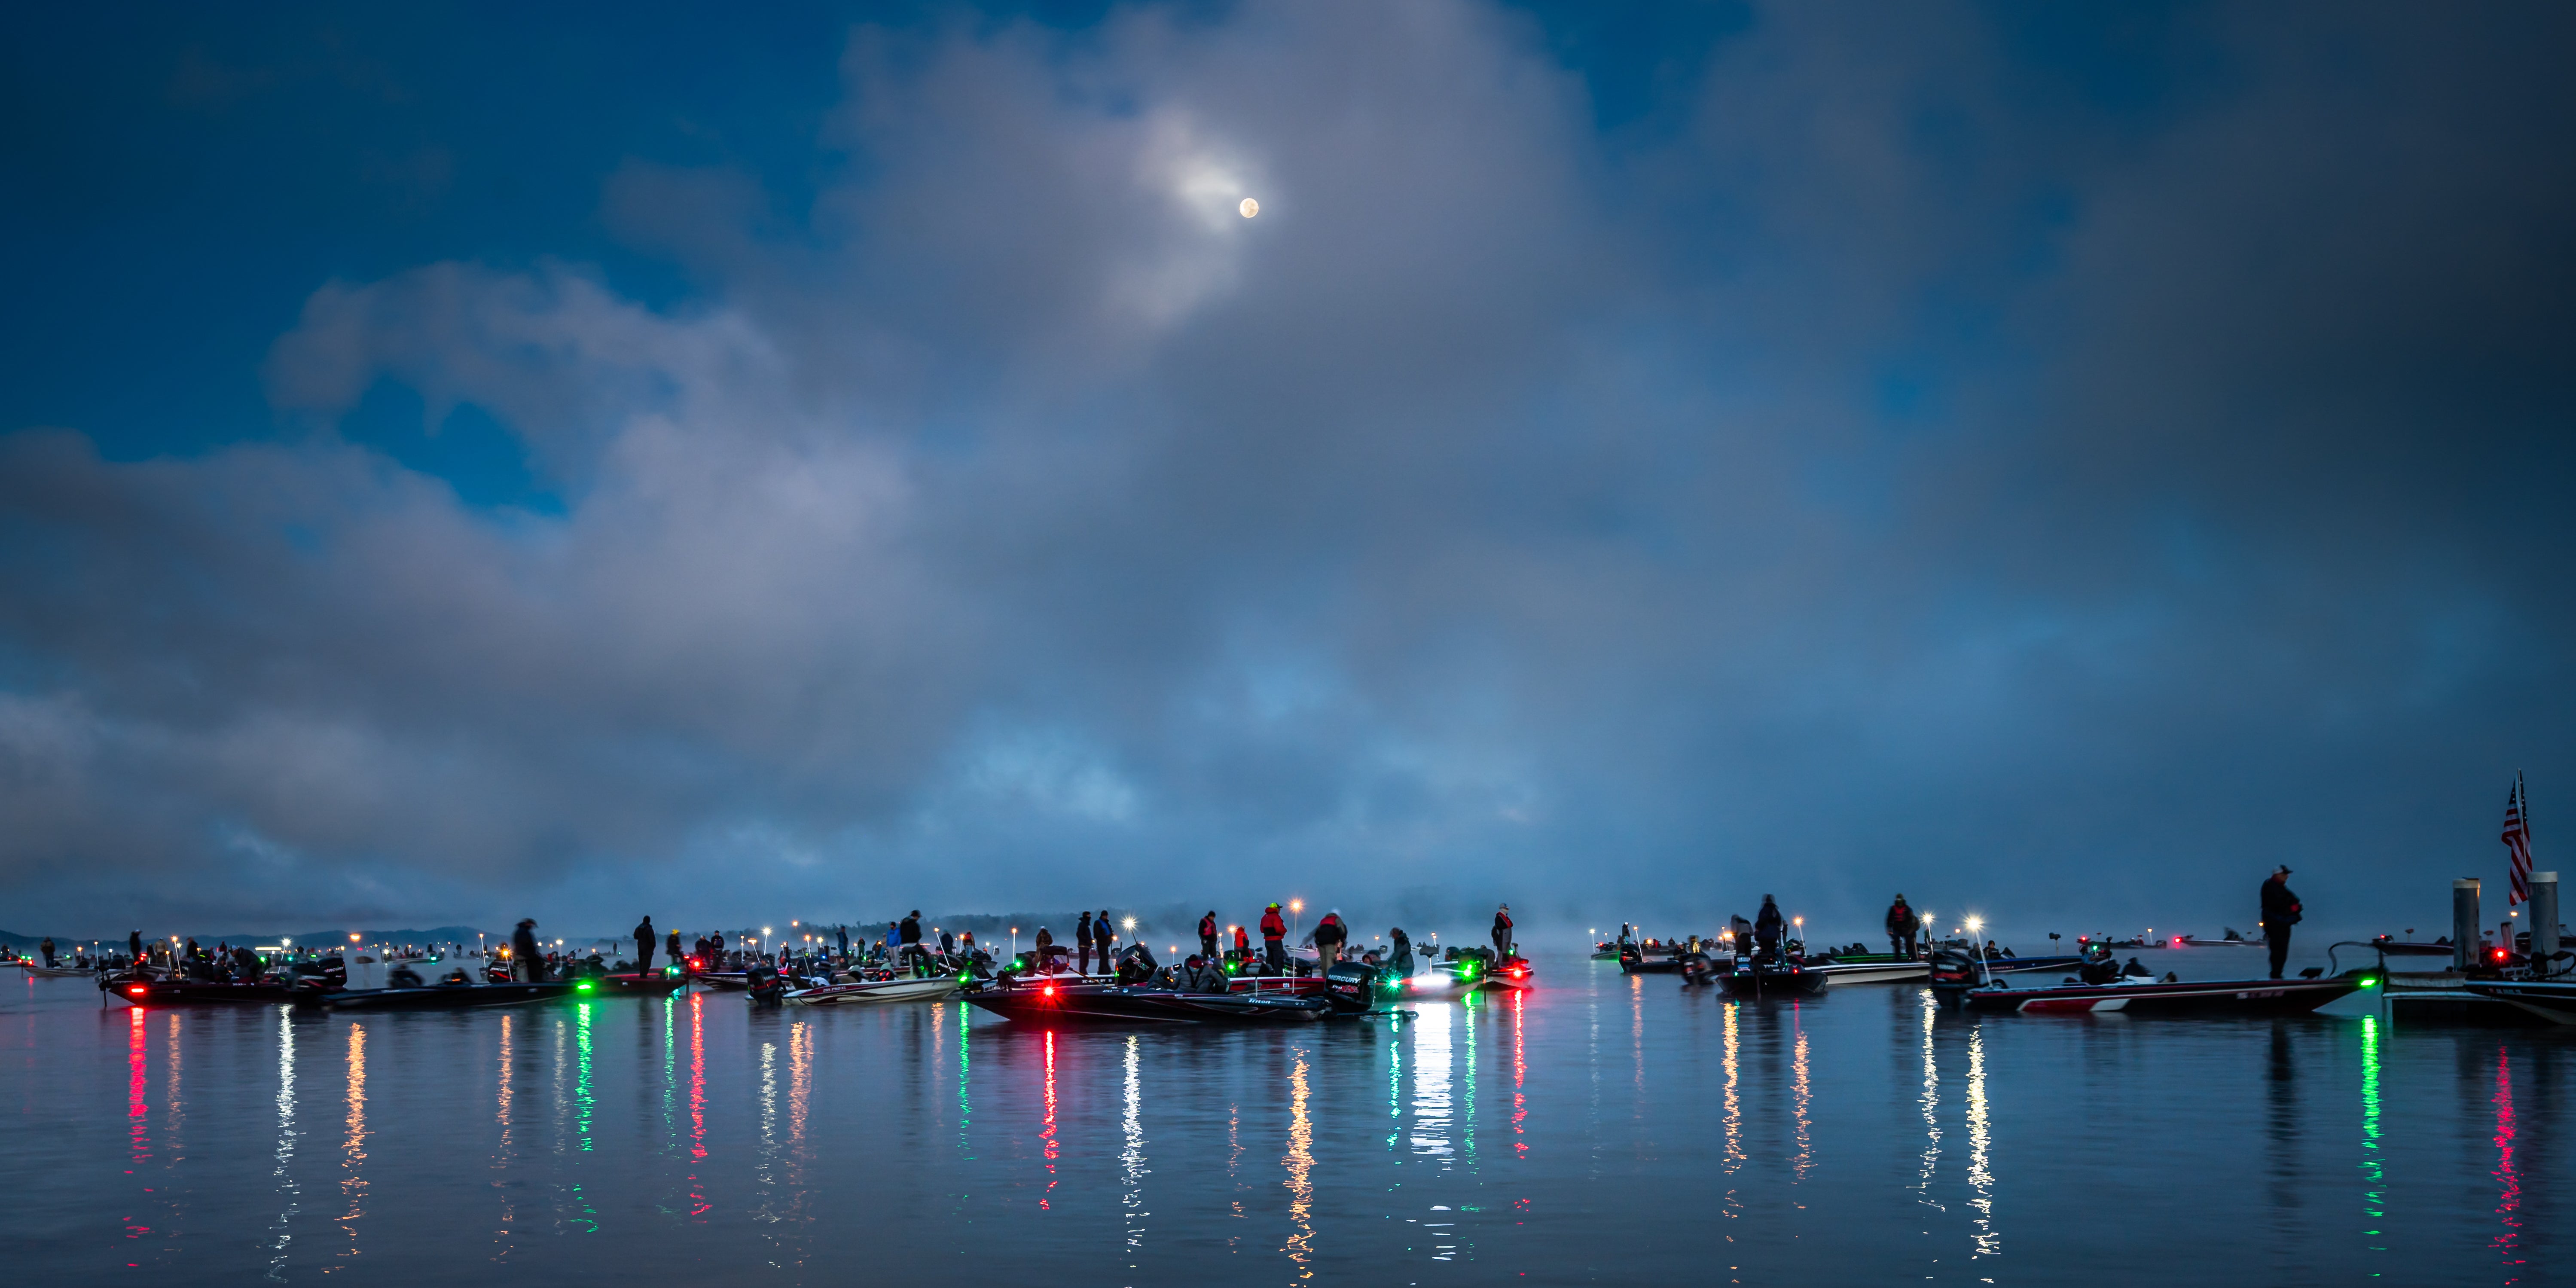 Full moon fishing on Lake Guntersville by Christopher Baker